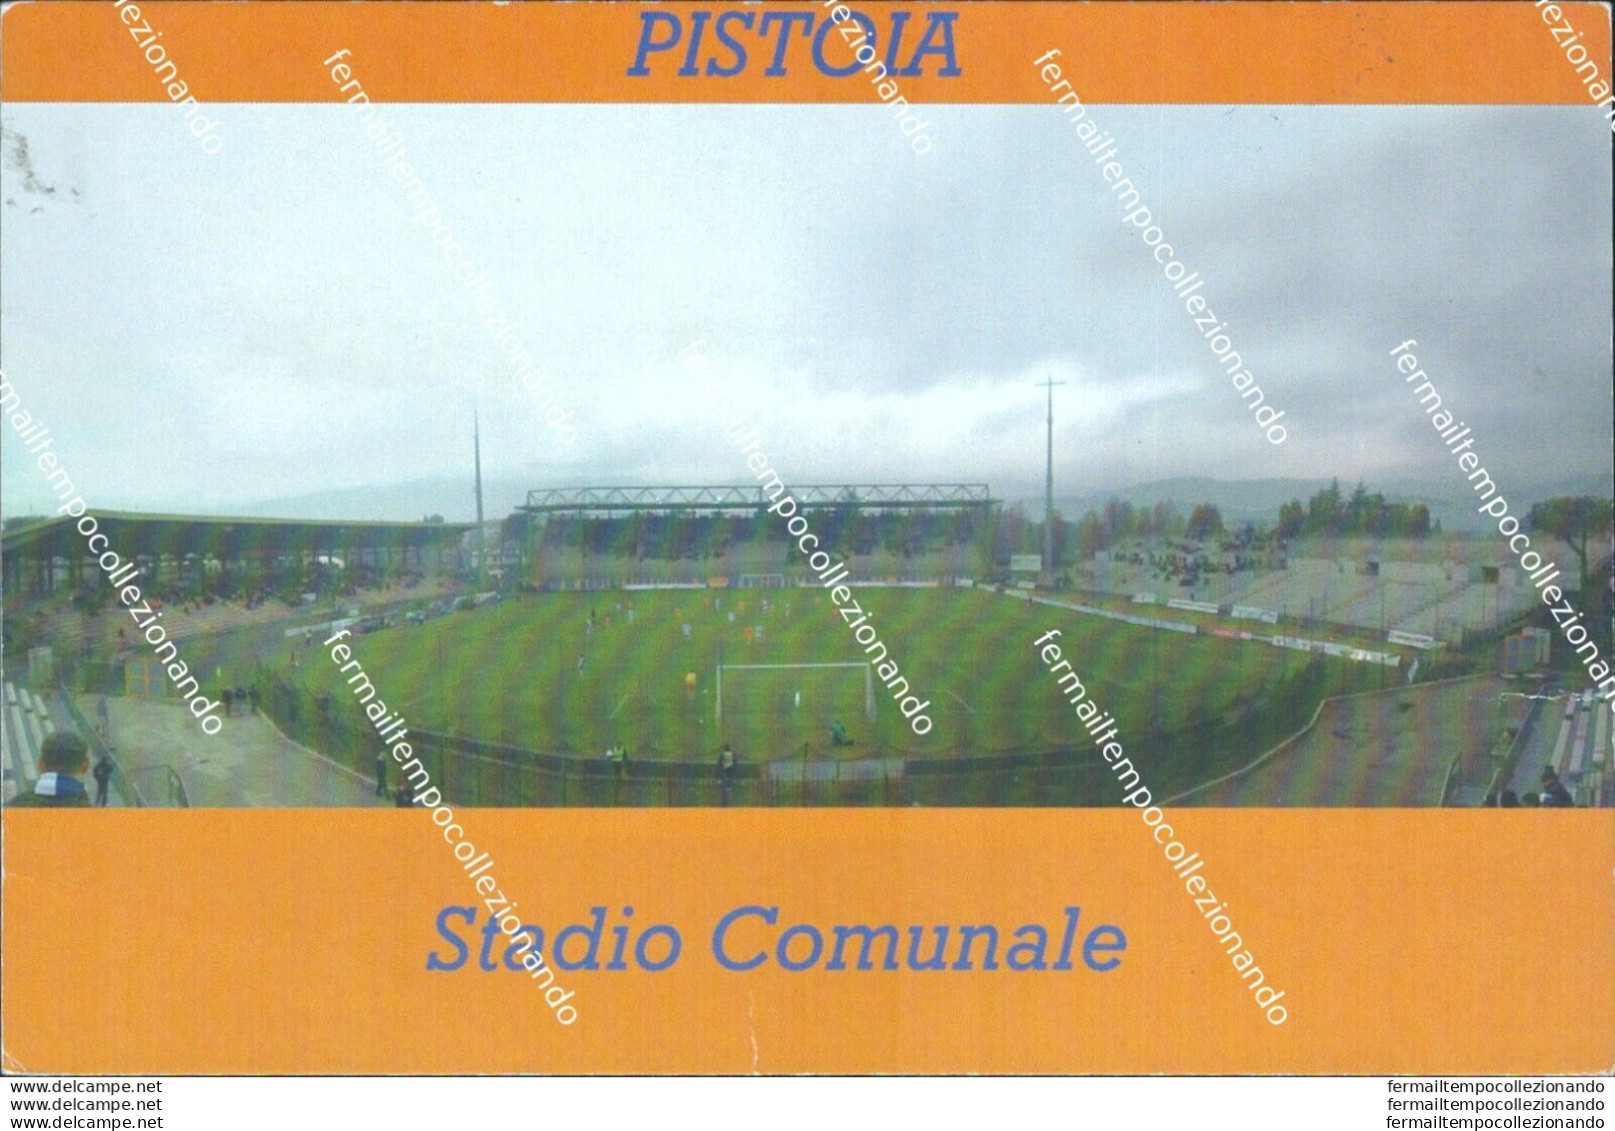 Bo559 Cartolina Pistoia Stadio Comunale 1988 - Pistoia